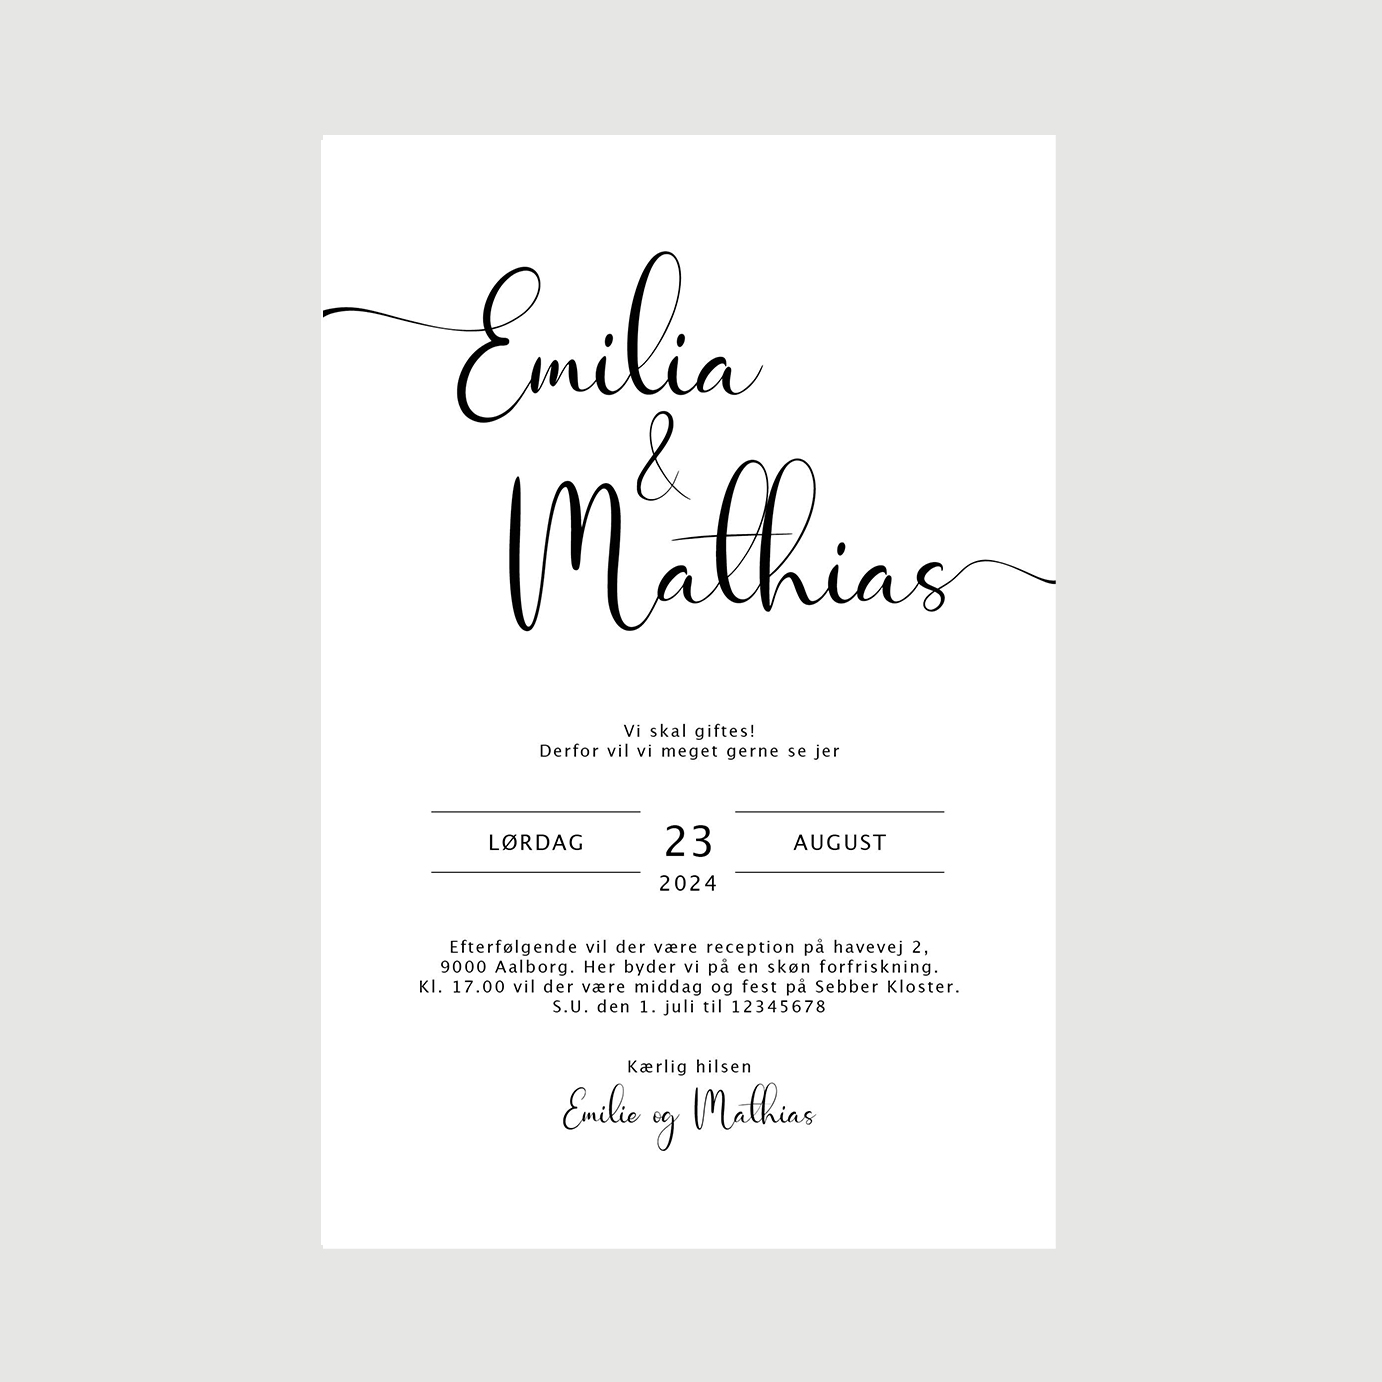 emilia-Mathias-invitation-visning